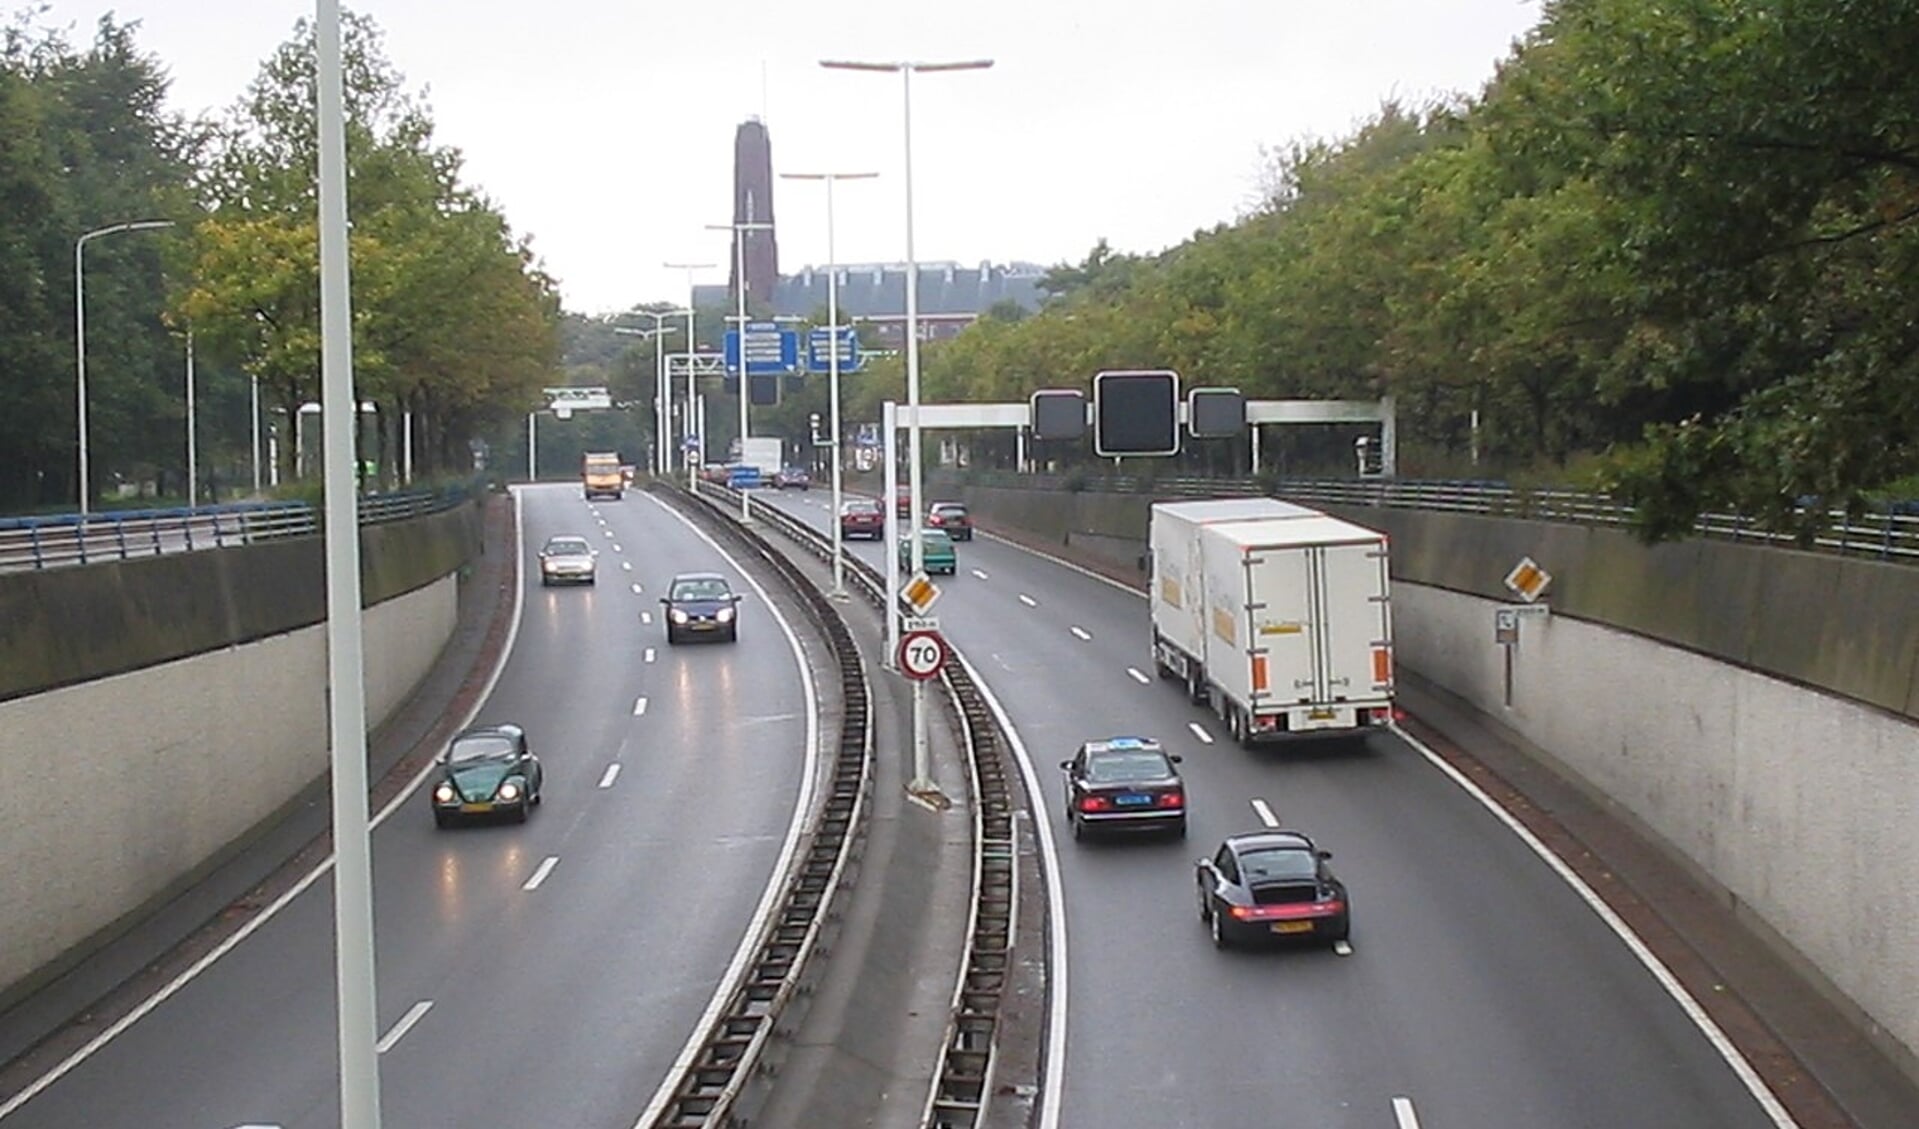 Uitloper van de A12: Utrechtsebaan gezien vanaf de Malietoren.